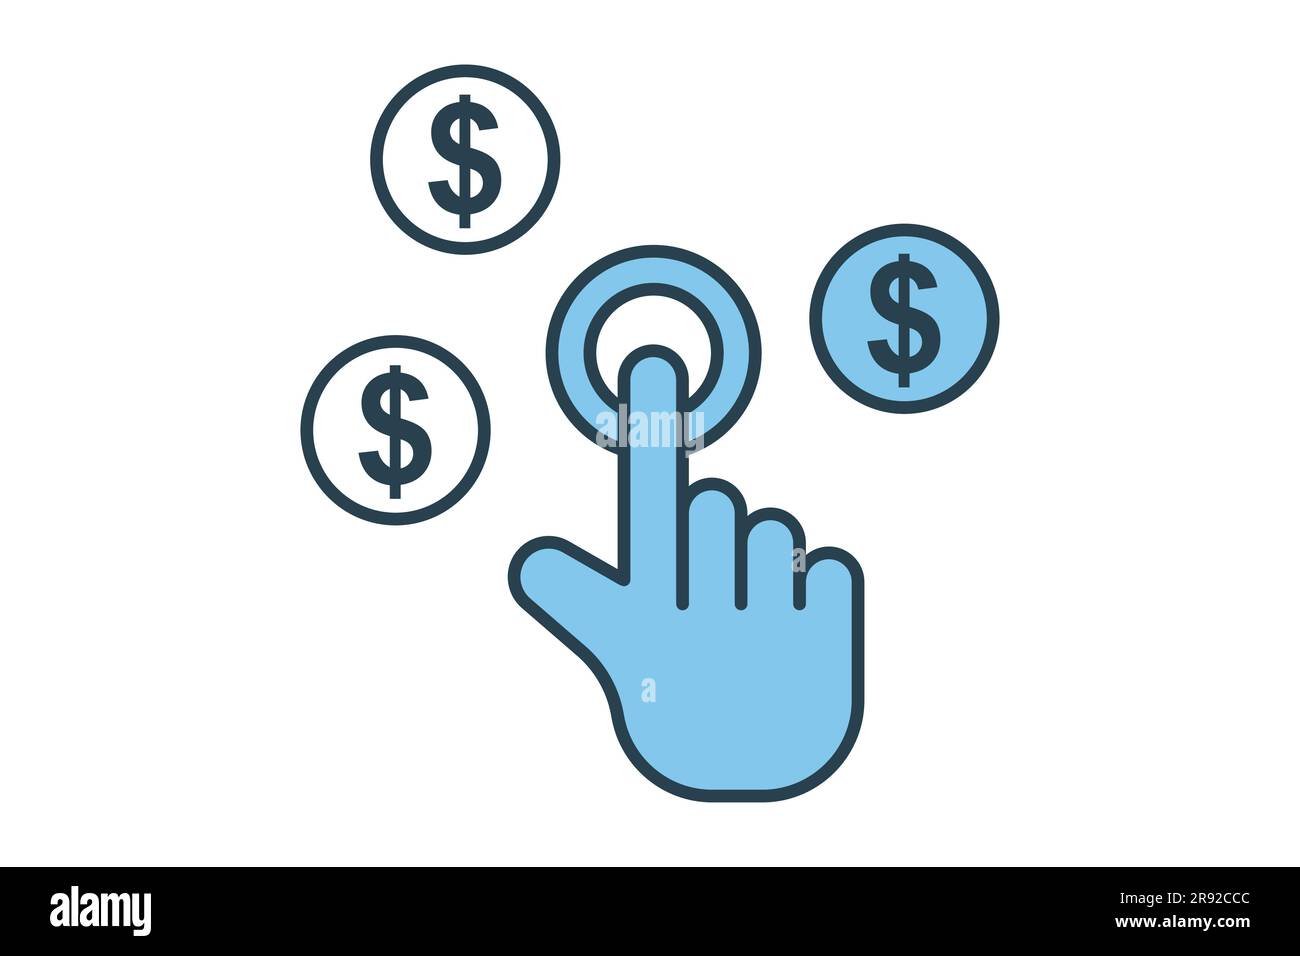 Symbol für Bezahlung pro Klick. Handberührung mit Dollar, klicken Sie auf Money seo. Flaches Design im Icon-Stil. Einfache Vektorkonstruktion editierbar Stock Vektor